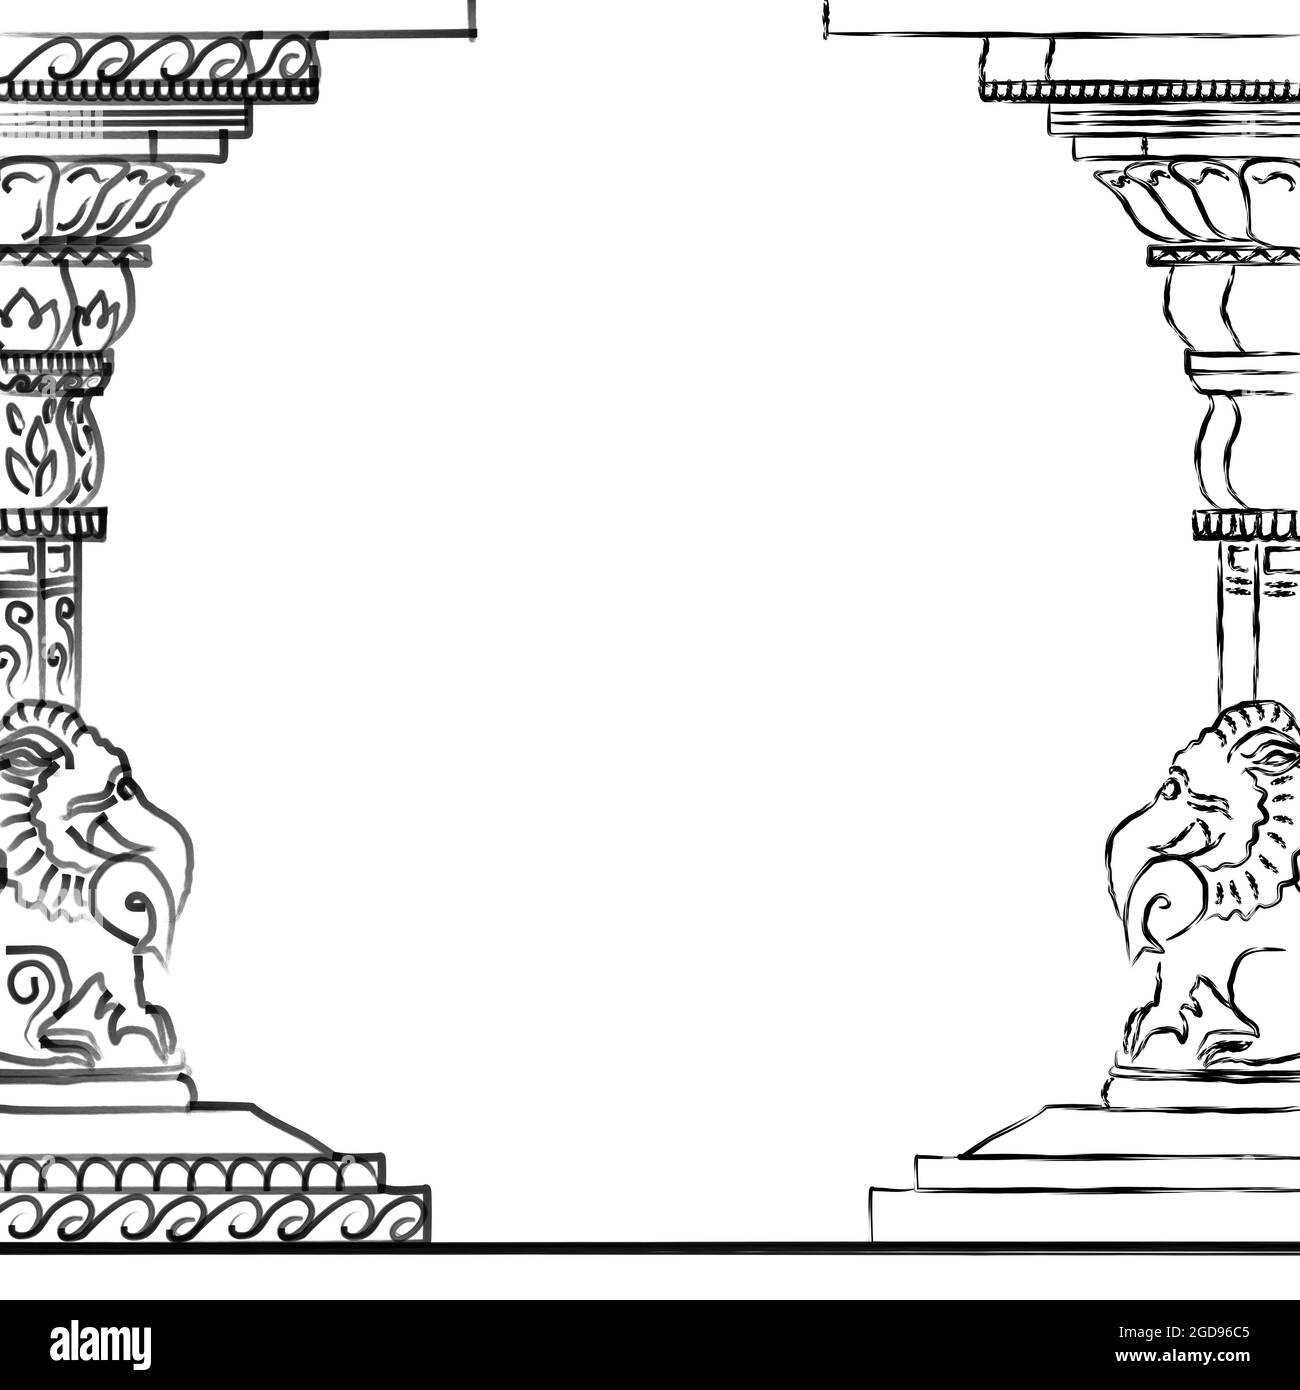 Indische Tempelästhetik: Skizze einer Säule im Chola-Stil, mit einer Makara an der Basis. Wird als Rahmen oder Dekoration verwendet. Stockfoto